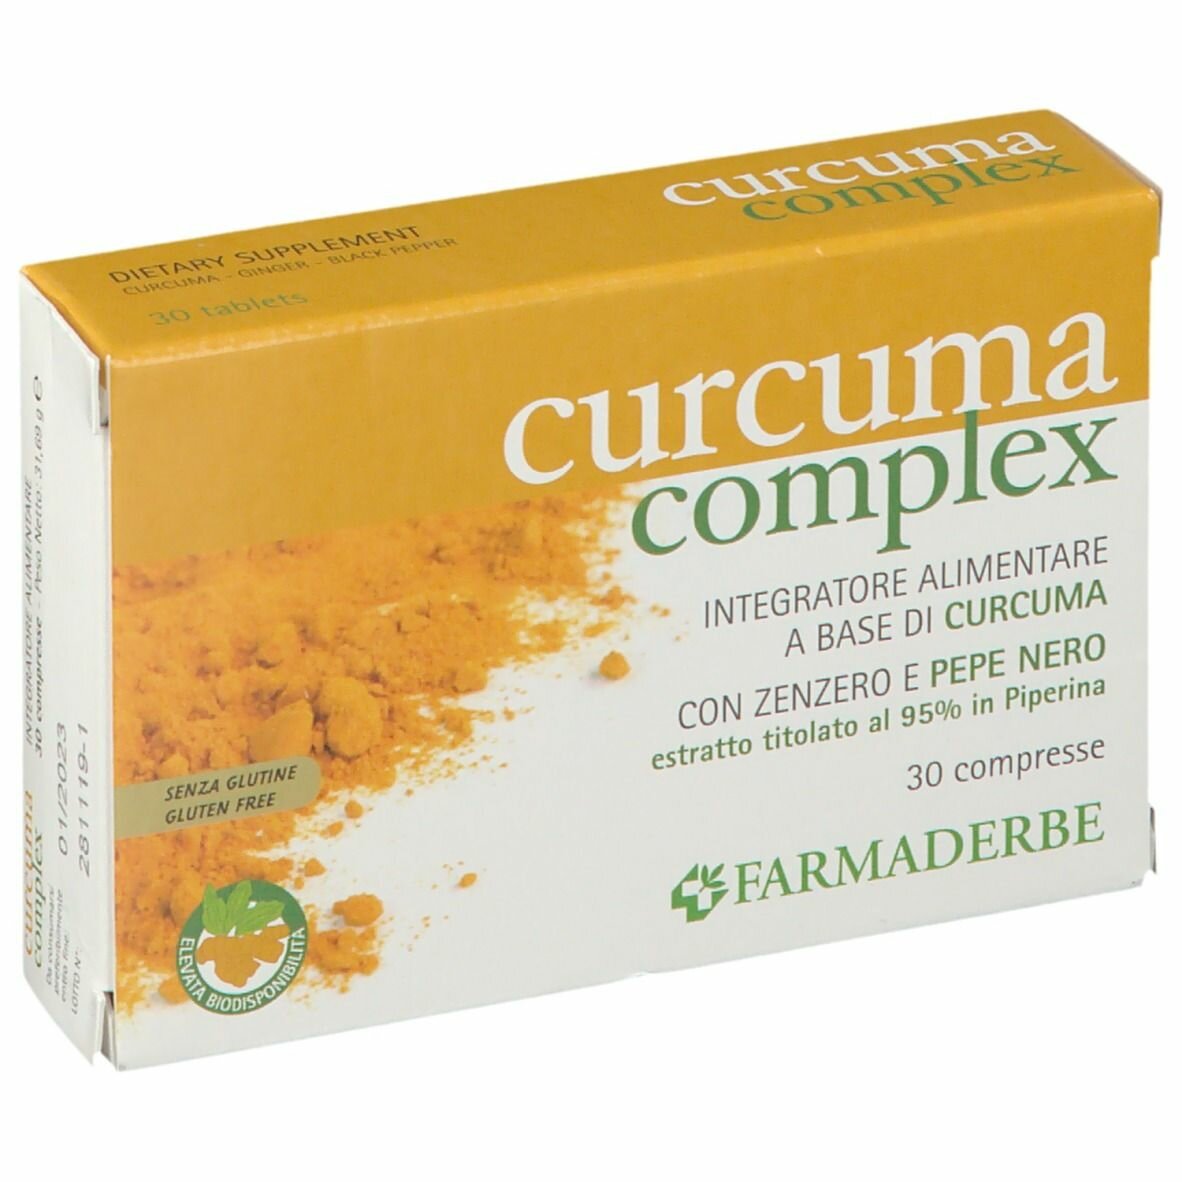 Farmaderbe Curcuma 30 Compresse img